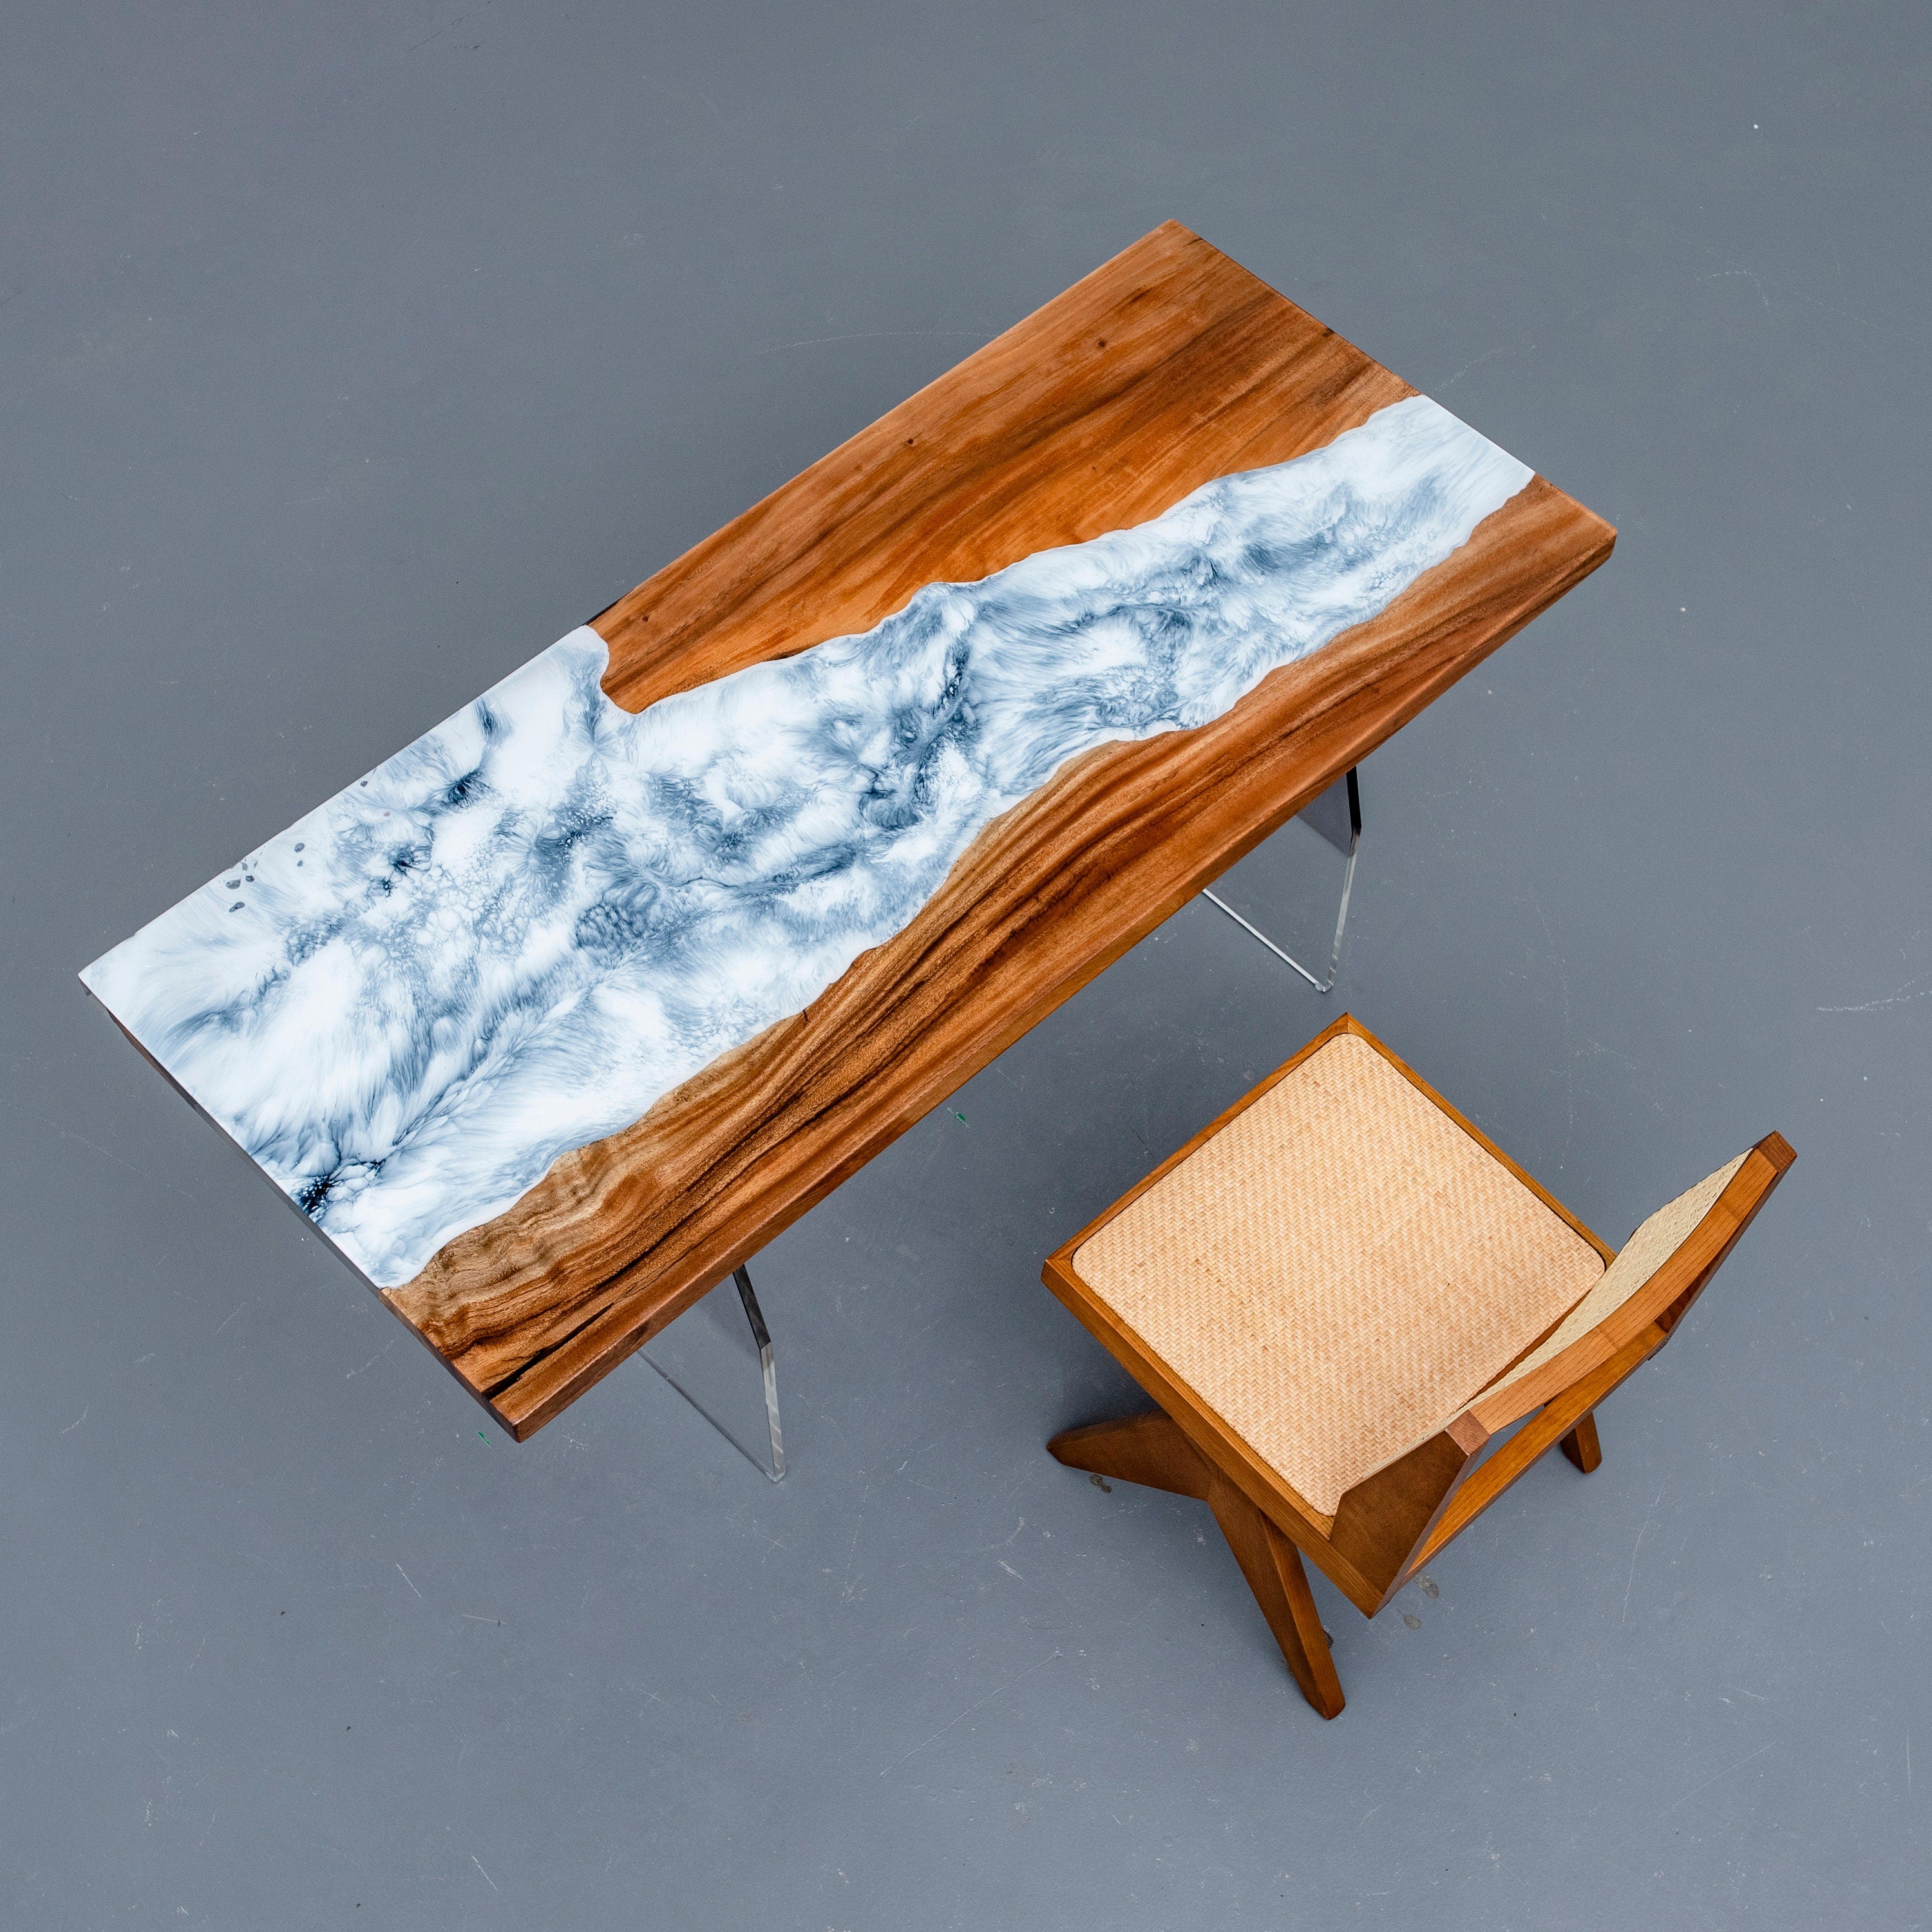 スノーフレークエポキシテーブル、ホワイトエポキシ樹脂テーブル、スノーダイニングテーブル、天然木テーブル